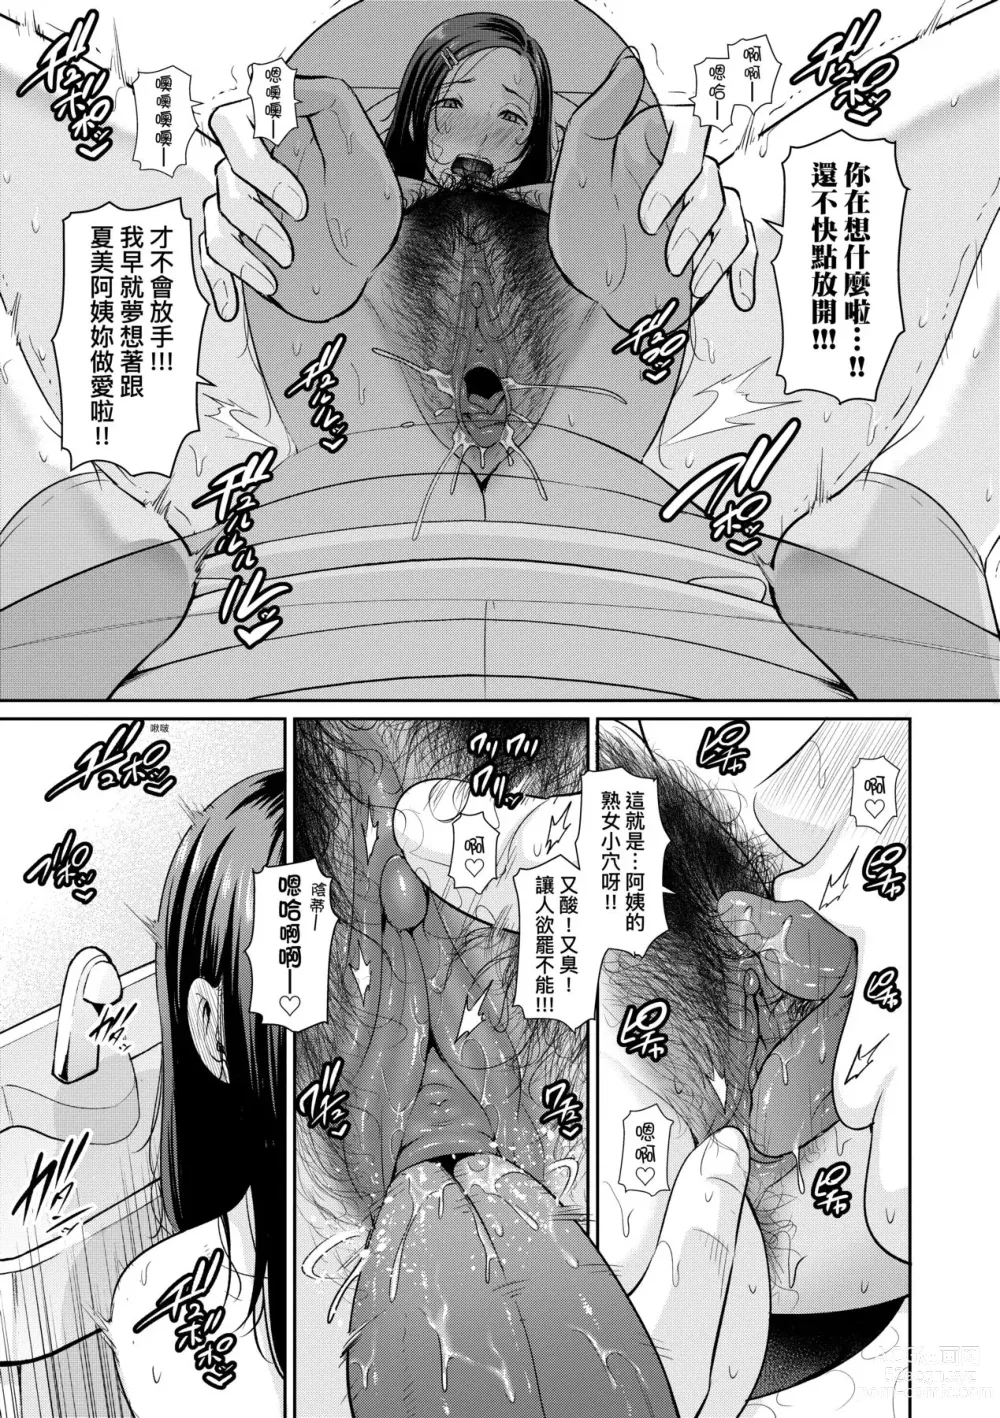 Page 14 of manga 朋友的馬麻 (decensored)